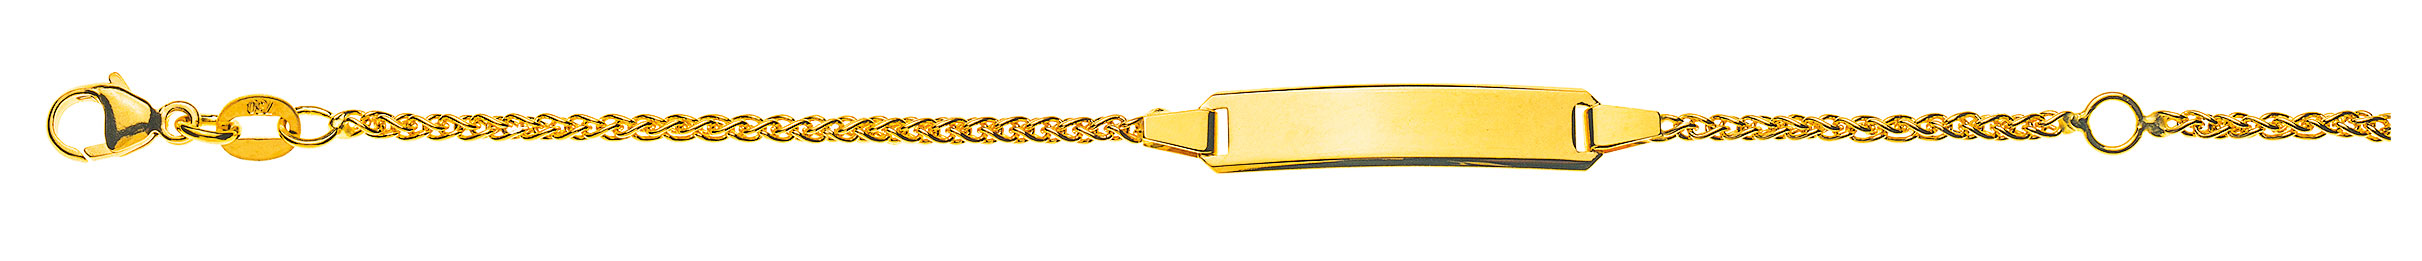 AURONOS Prestige ID bracelet 18k yellow gold plait chain 16cm